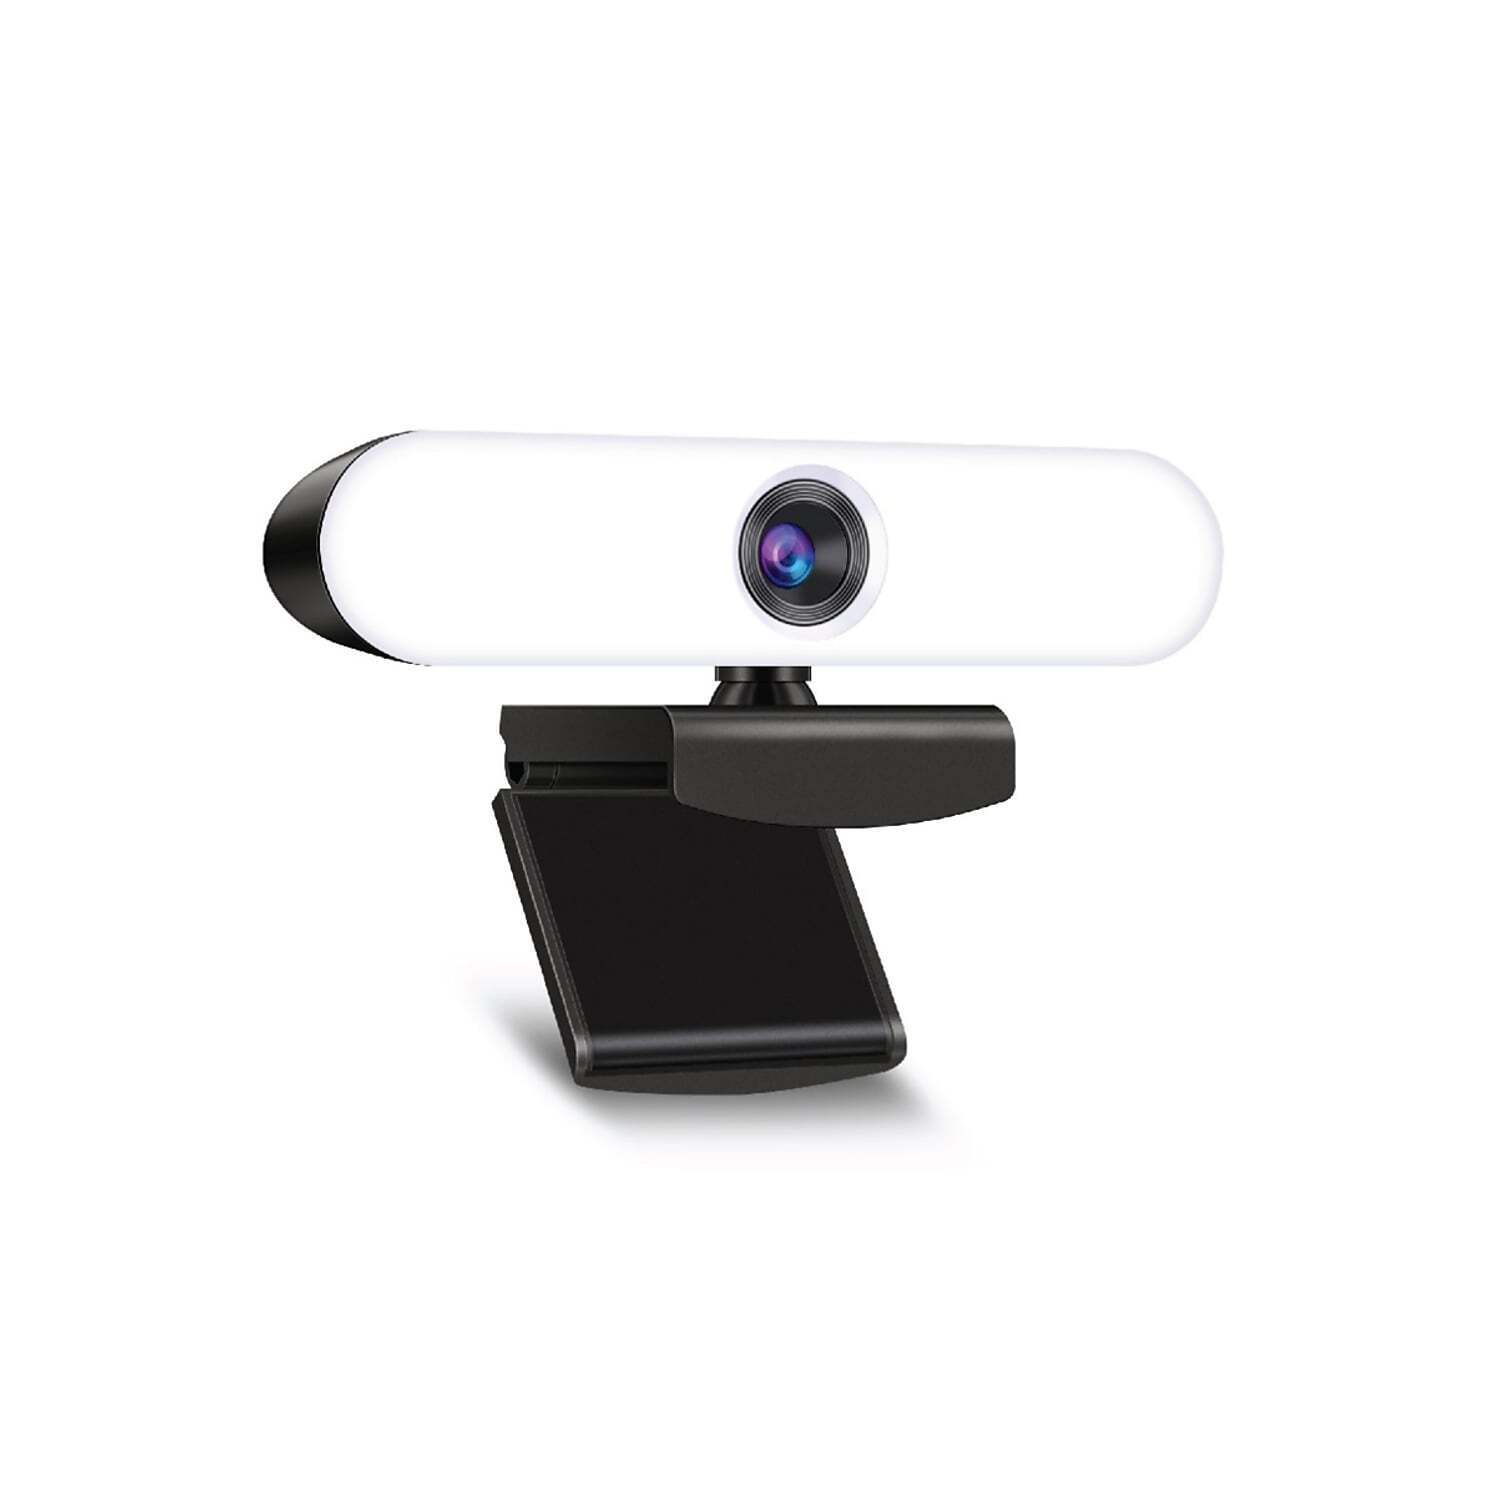 Packard Bell 1080P FHD Webcam with Built In Light (PBWC1083BK)